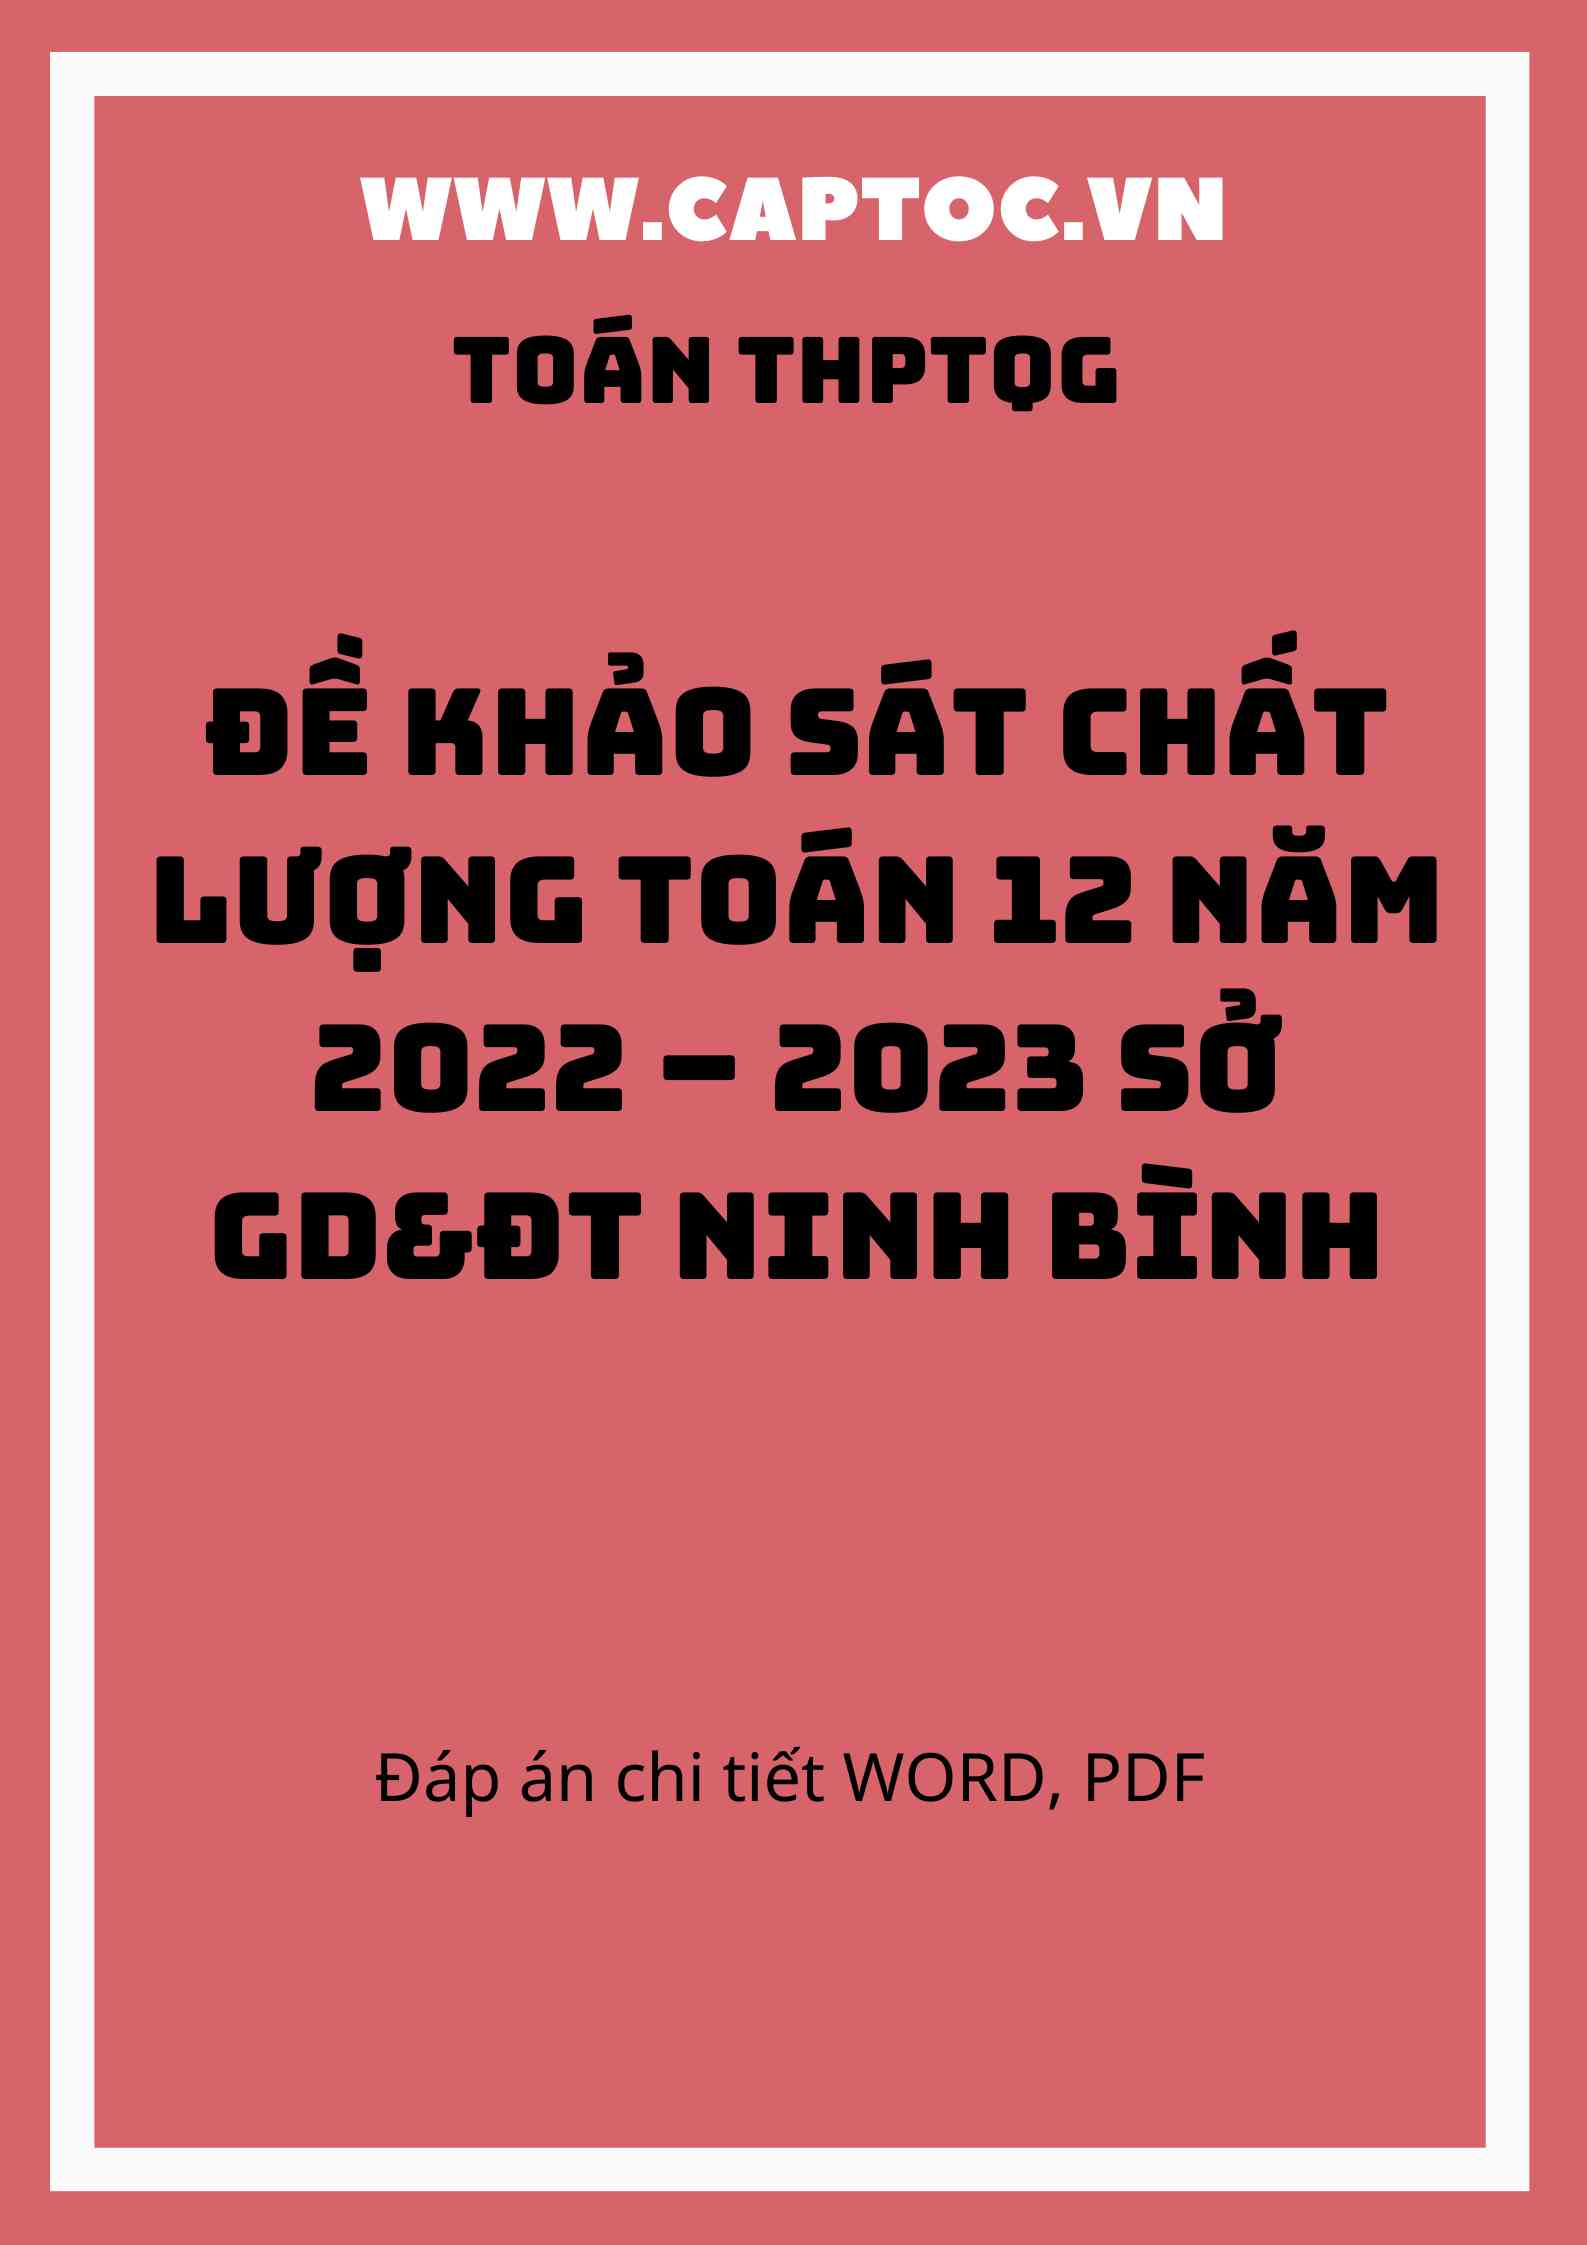 Đề khảo sát chất lượng Toán 12 năm 2022 – 2023 sở GD&ĐT Ninh Bình